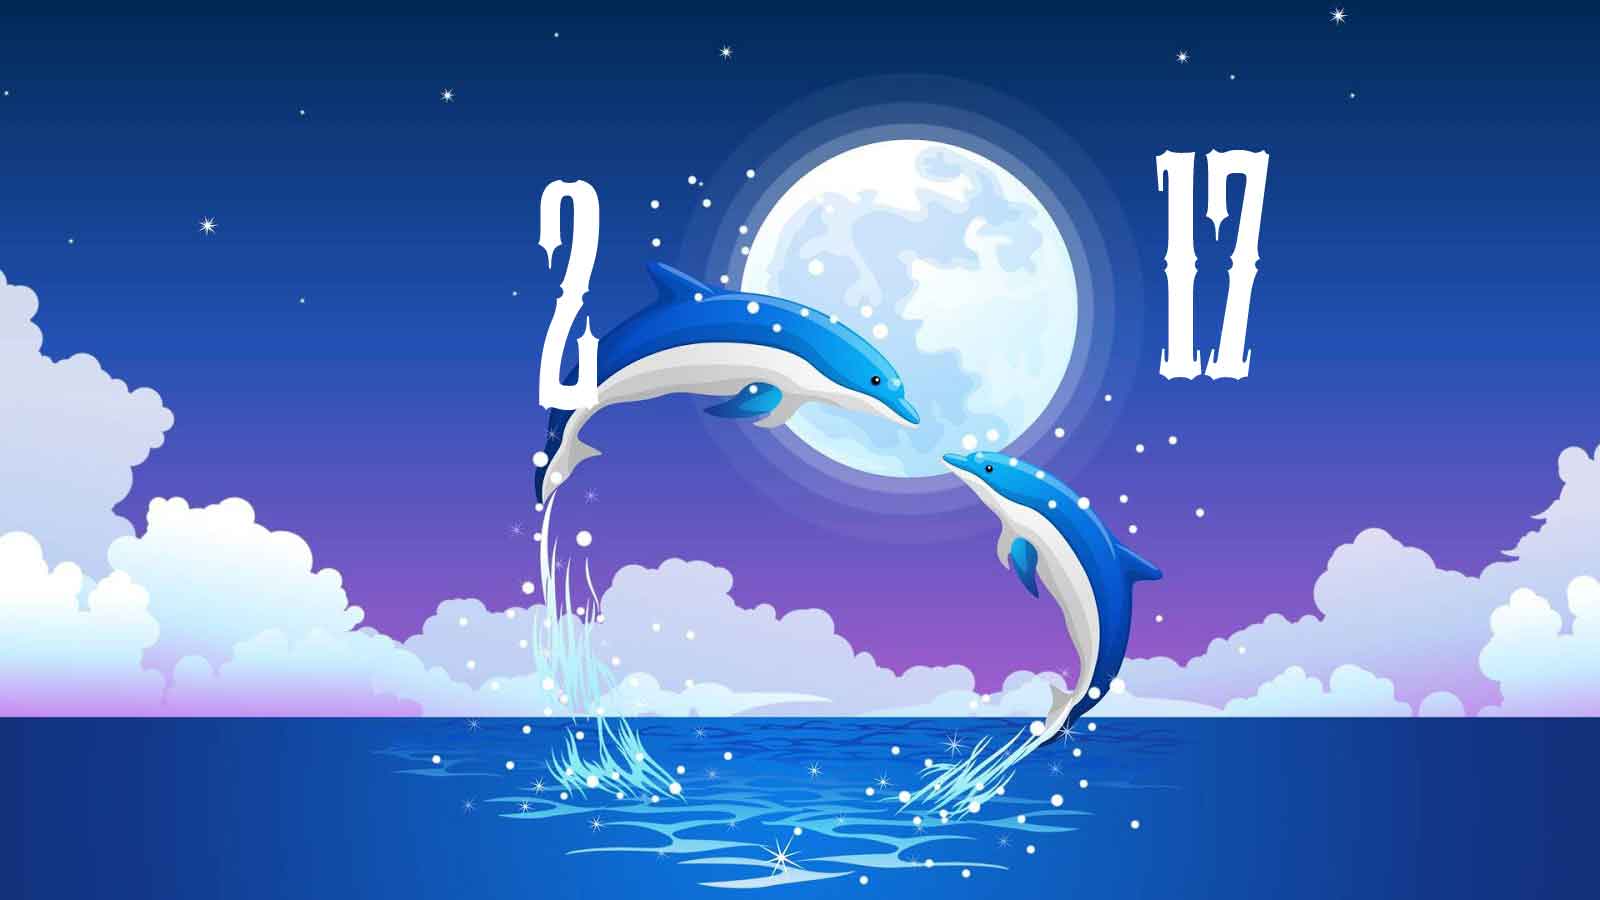 meilleur fond d'écran de nouvel an,l'eau,ciel,dauphin,conception graphique,illustration